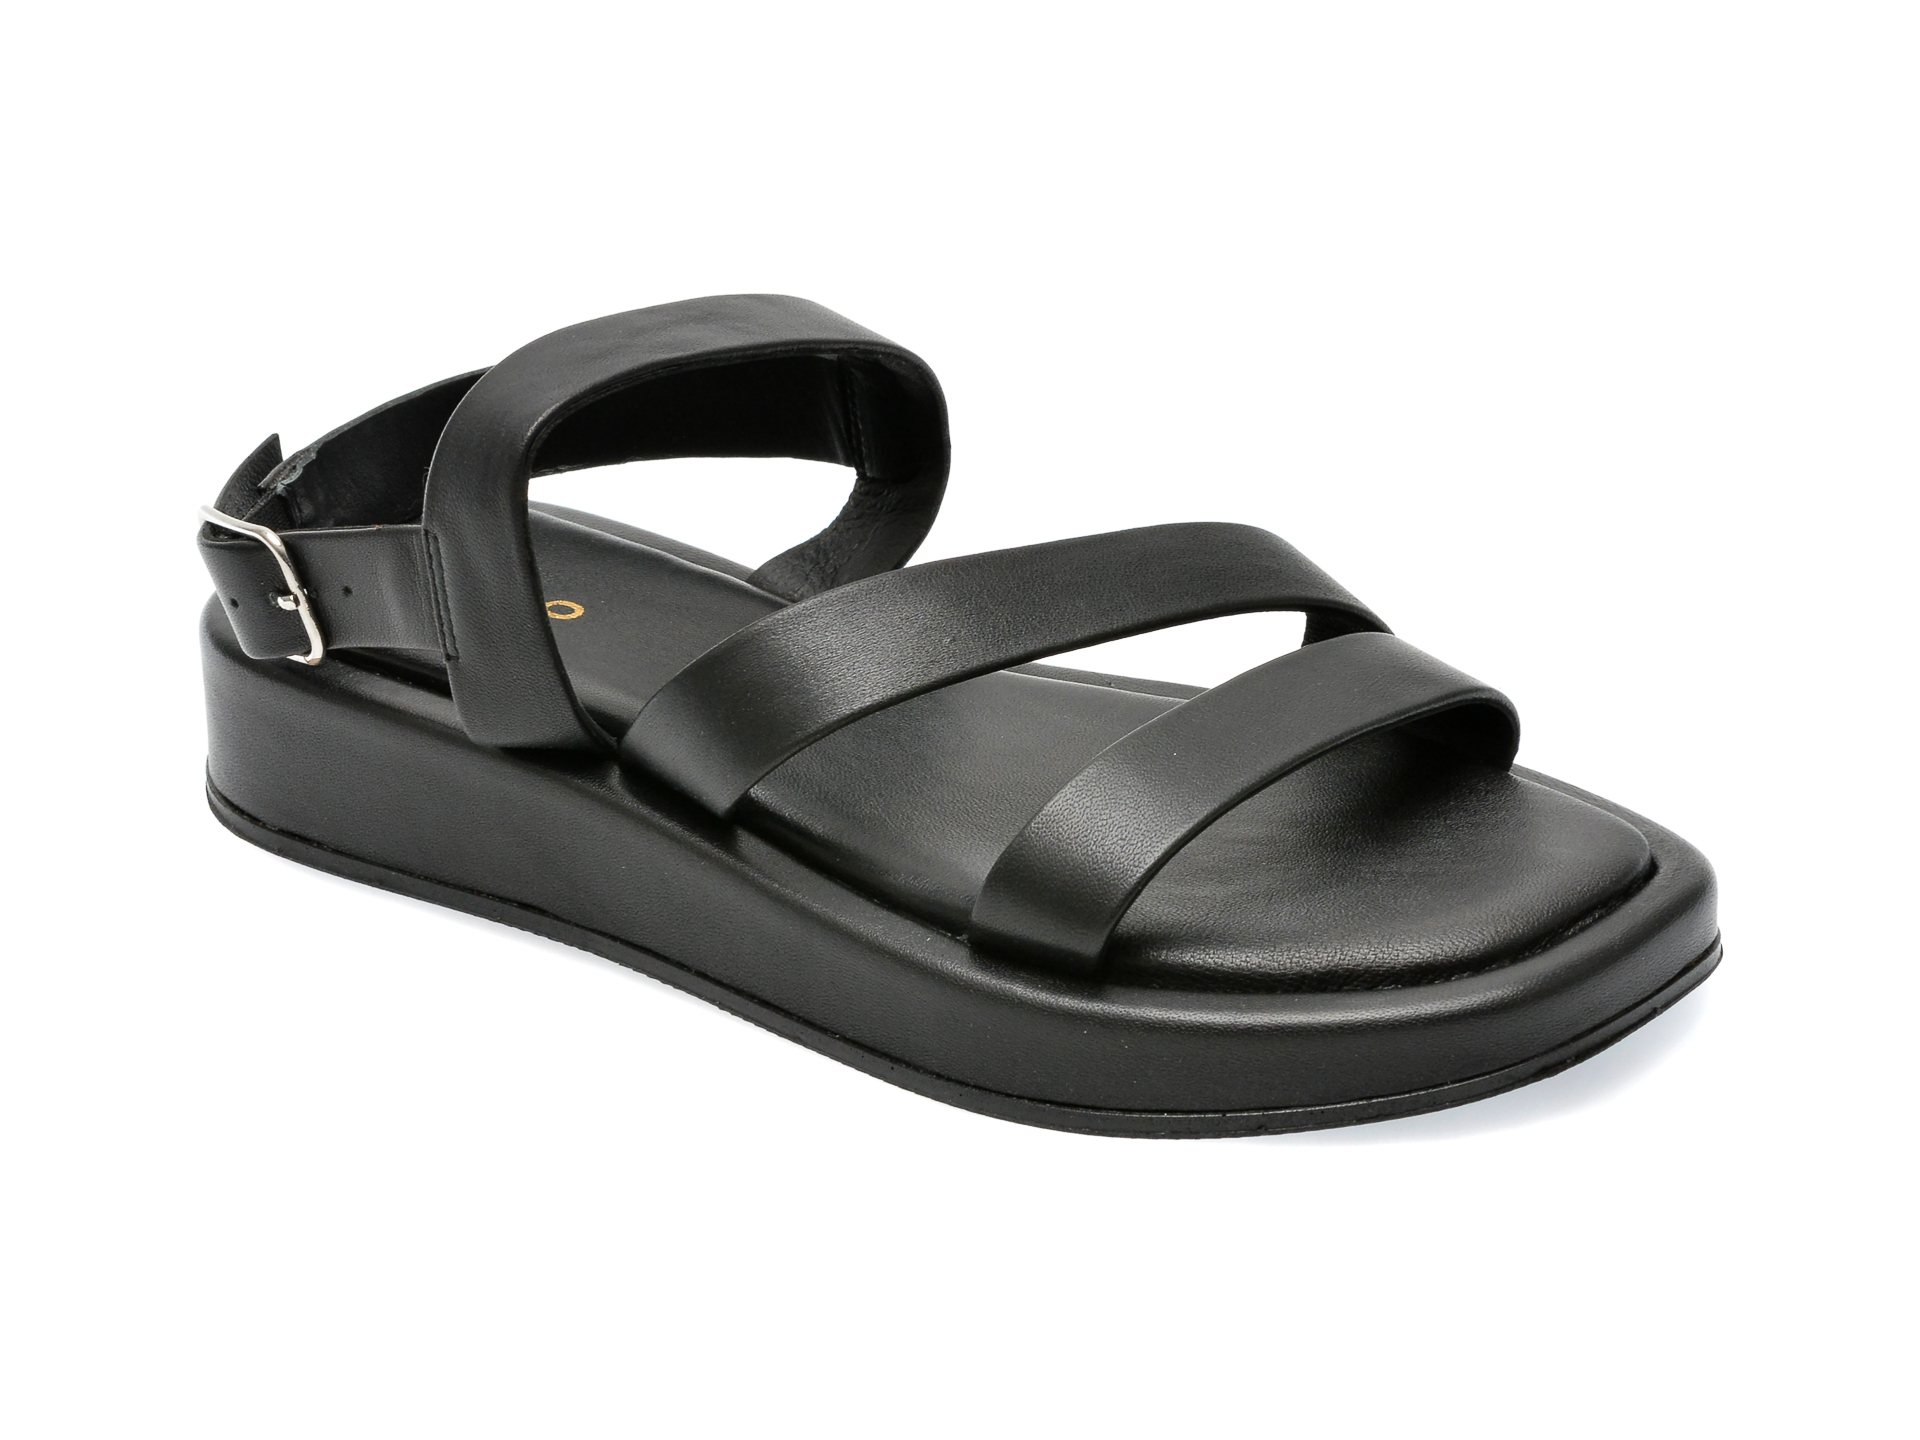 Sandale ALDO negre, RIMSKY001, din piele naturala Aldo INCALTAMINTE